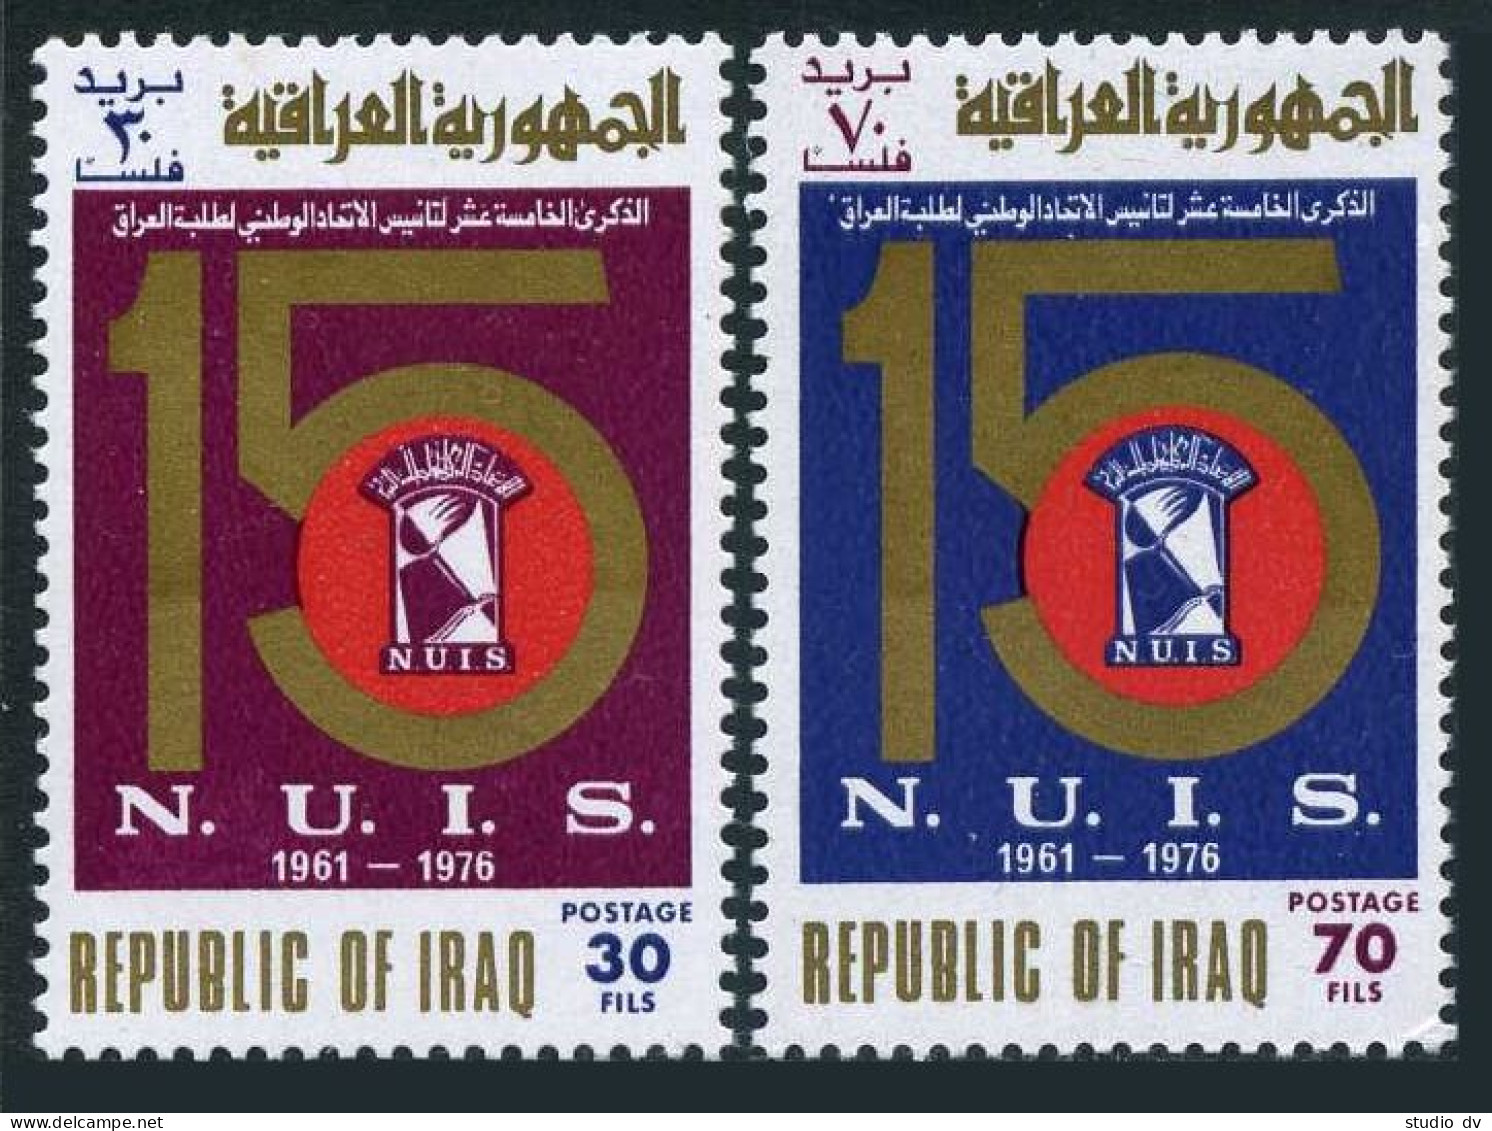 Iraq 792-793,MNH.Michel 884-885. National Students Union,15th Ann,1976. - Iraq